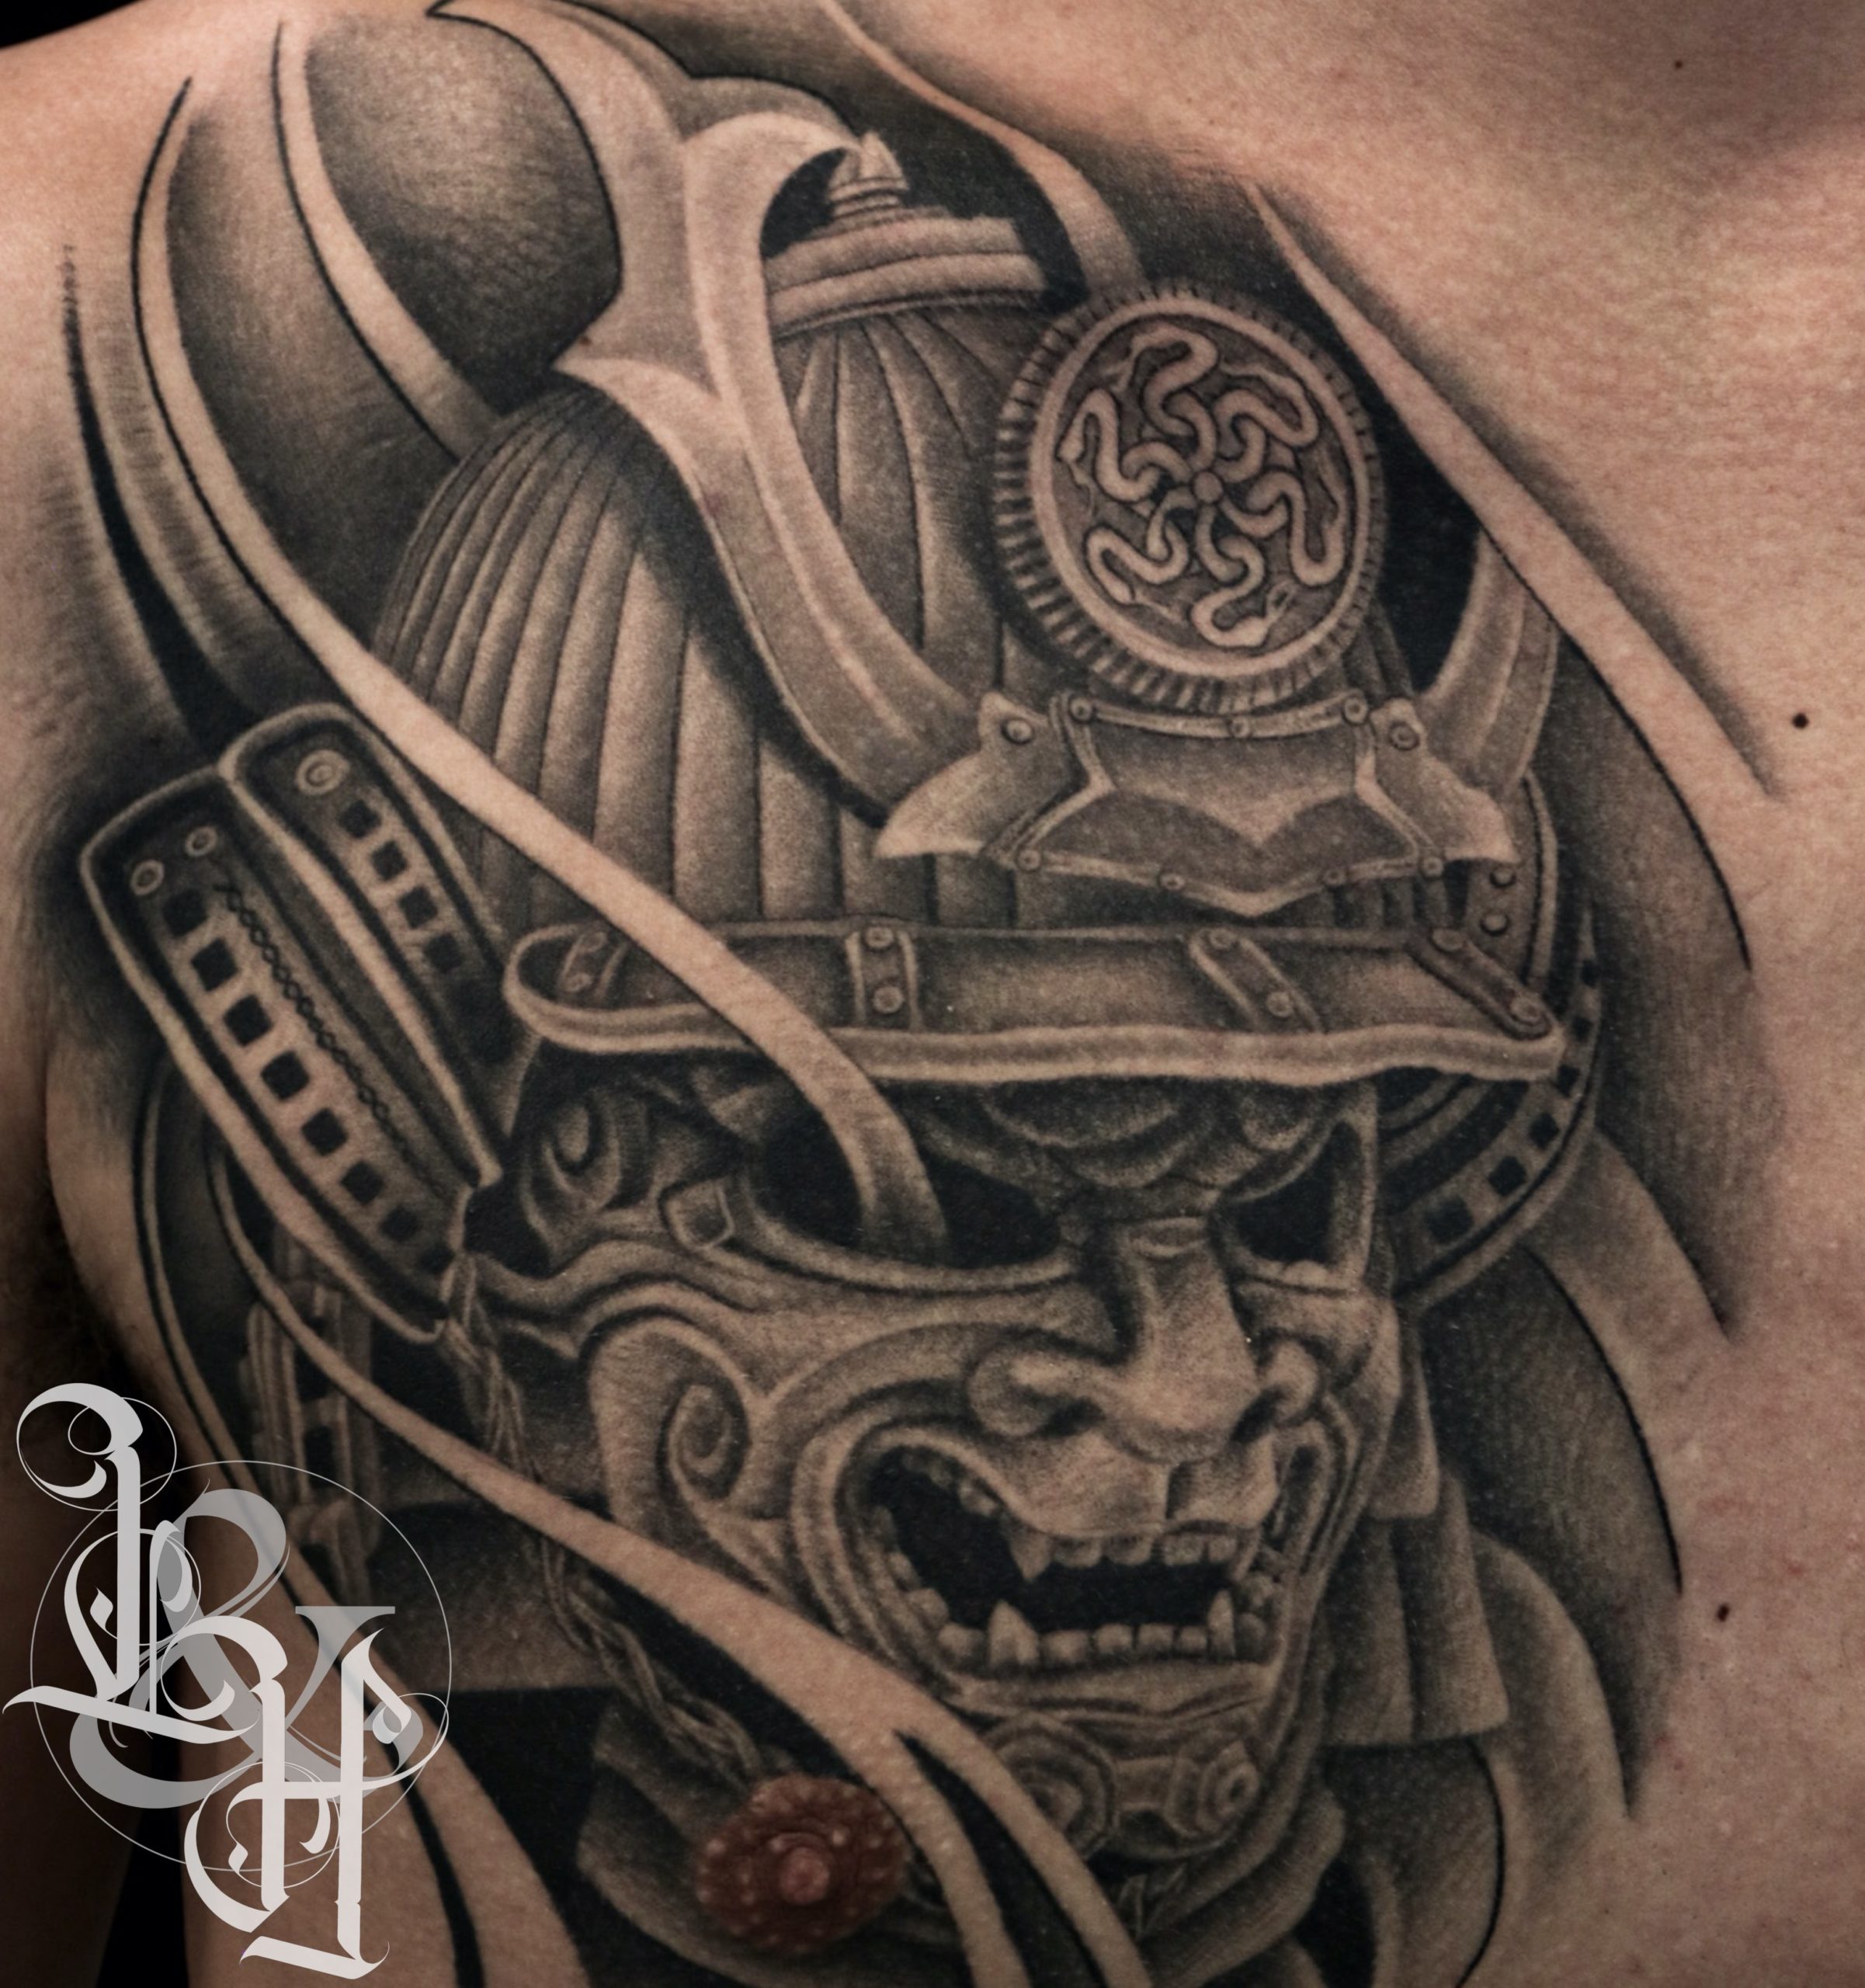 Black and Grey Samurai Mask Tattoo - Love n Hate